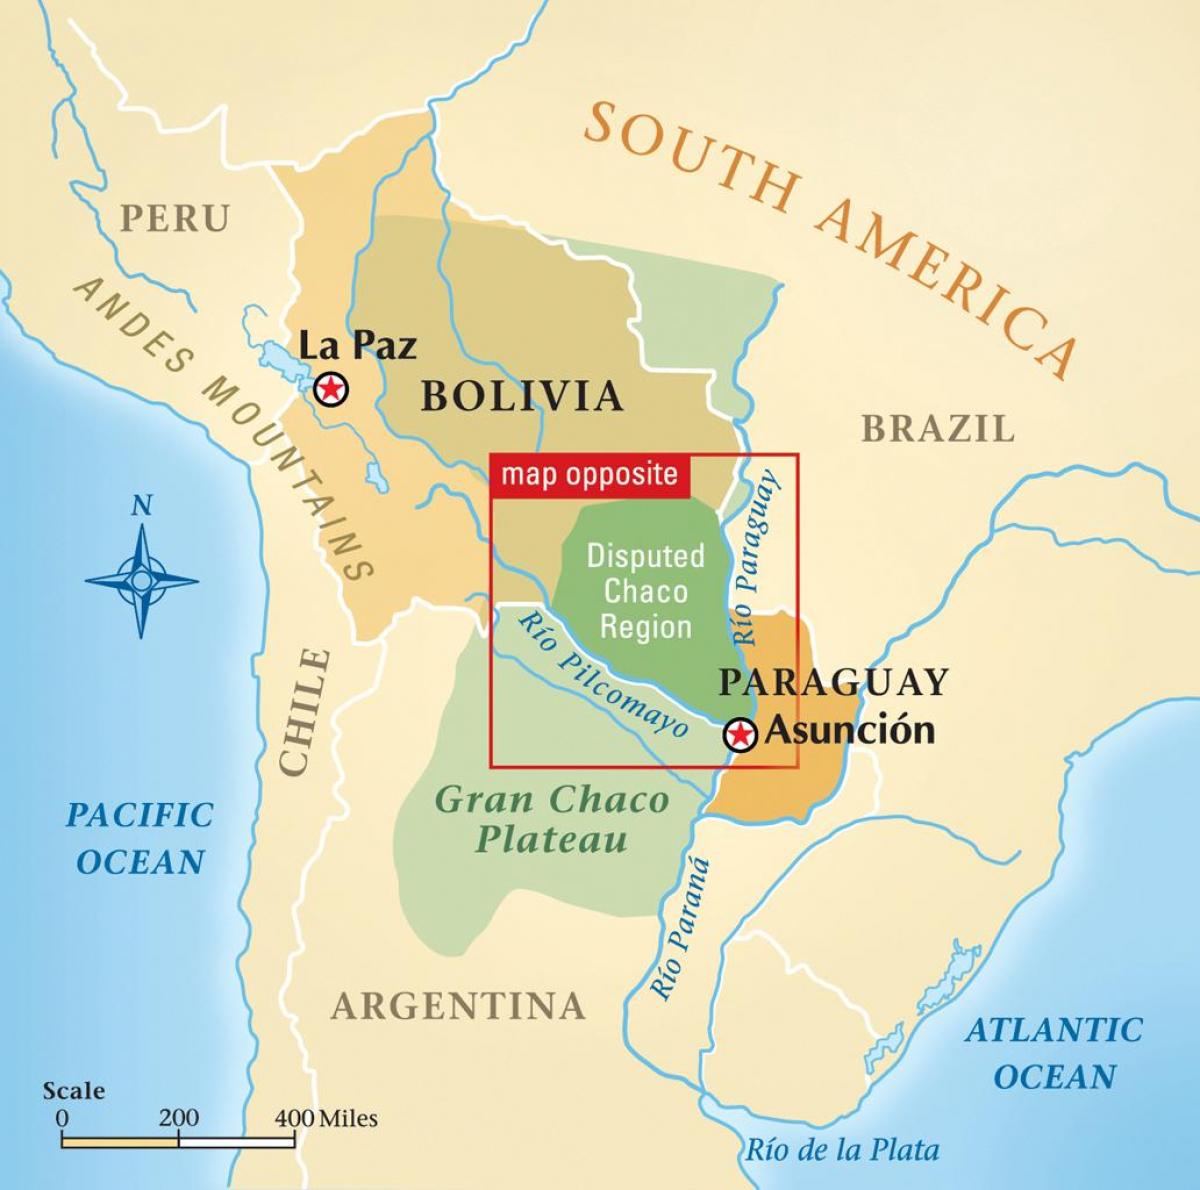 Harta rio Paraguay